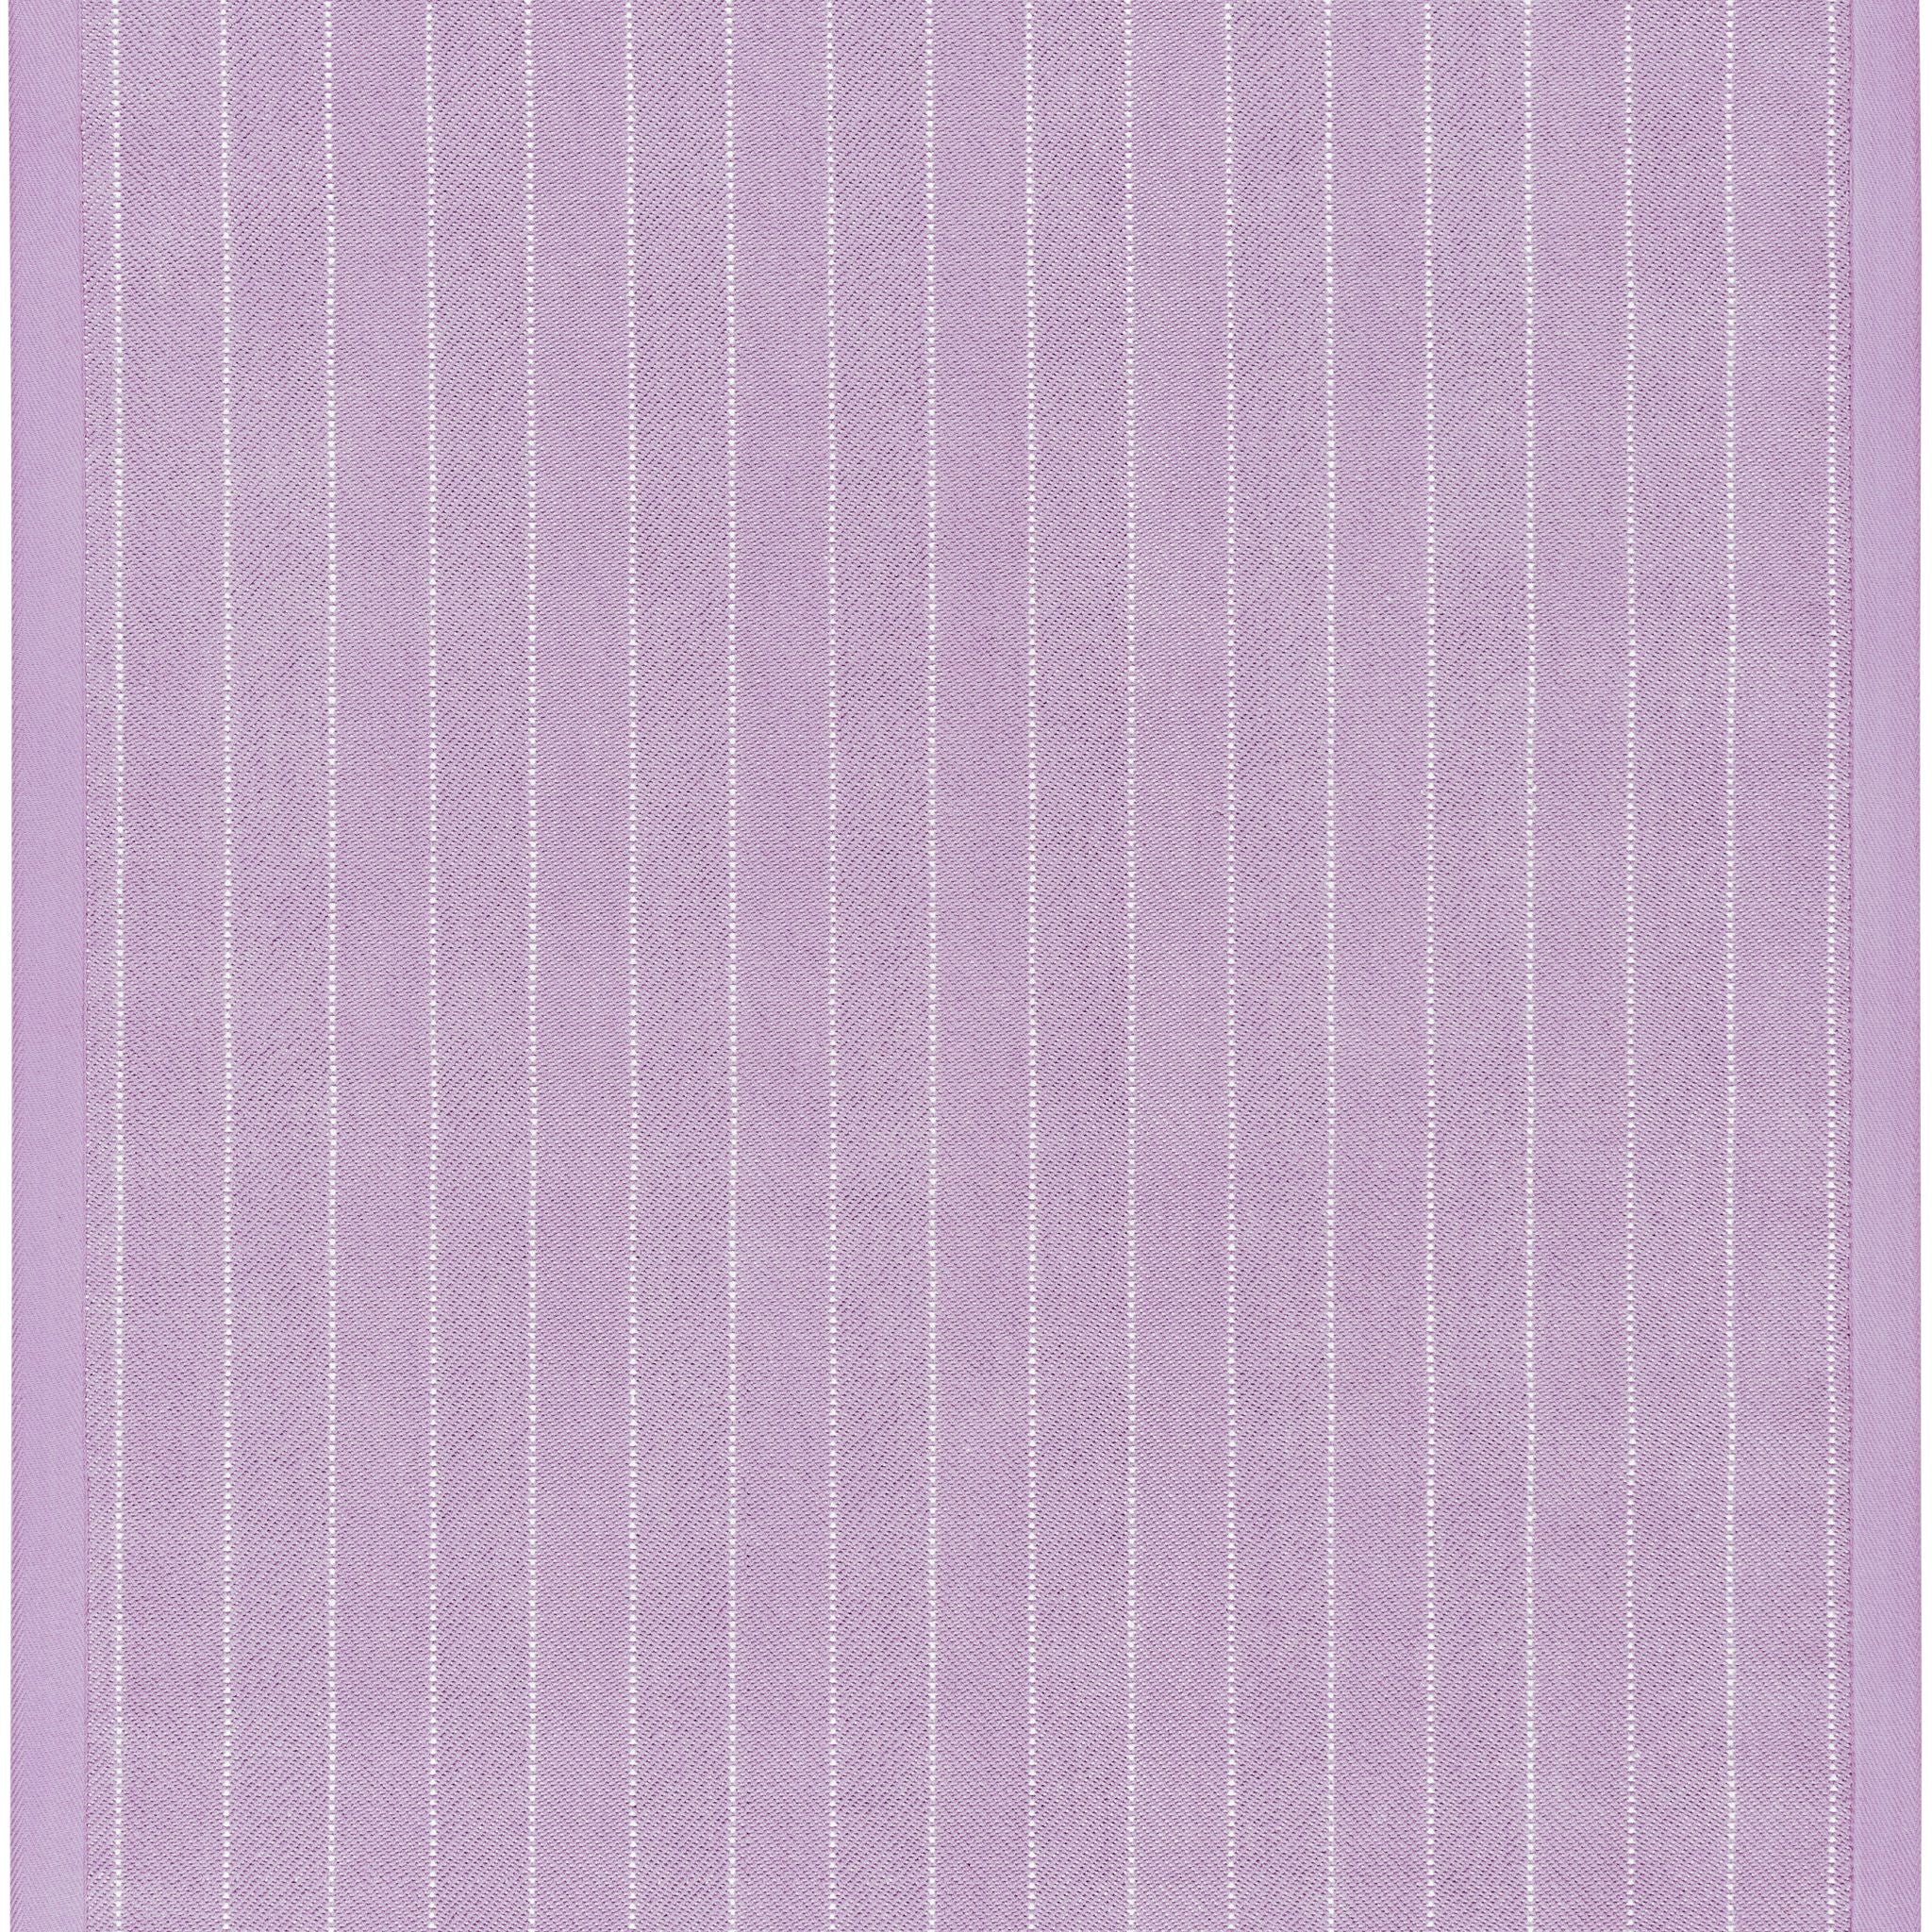 Damalis Wilton Carpet, Lilac Default Title